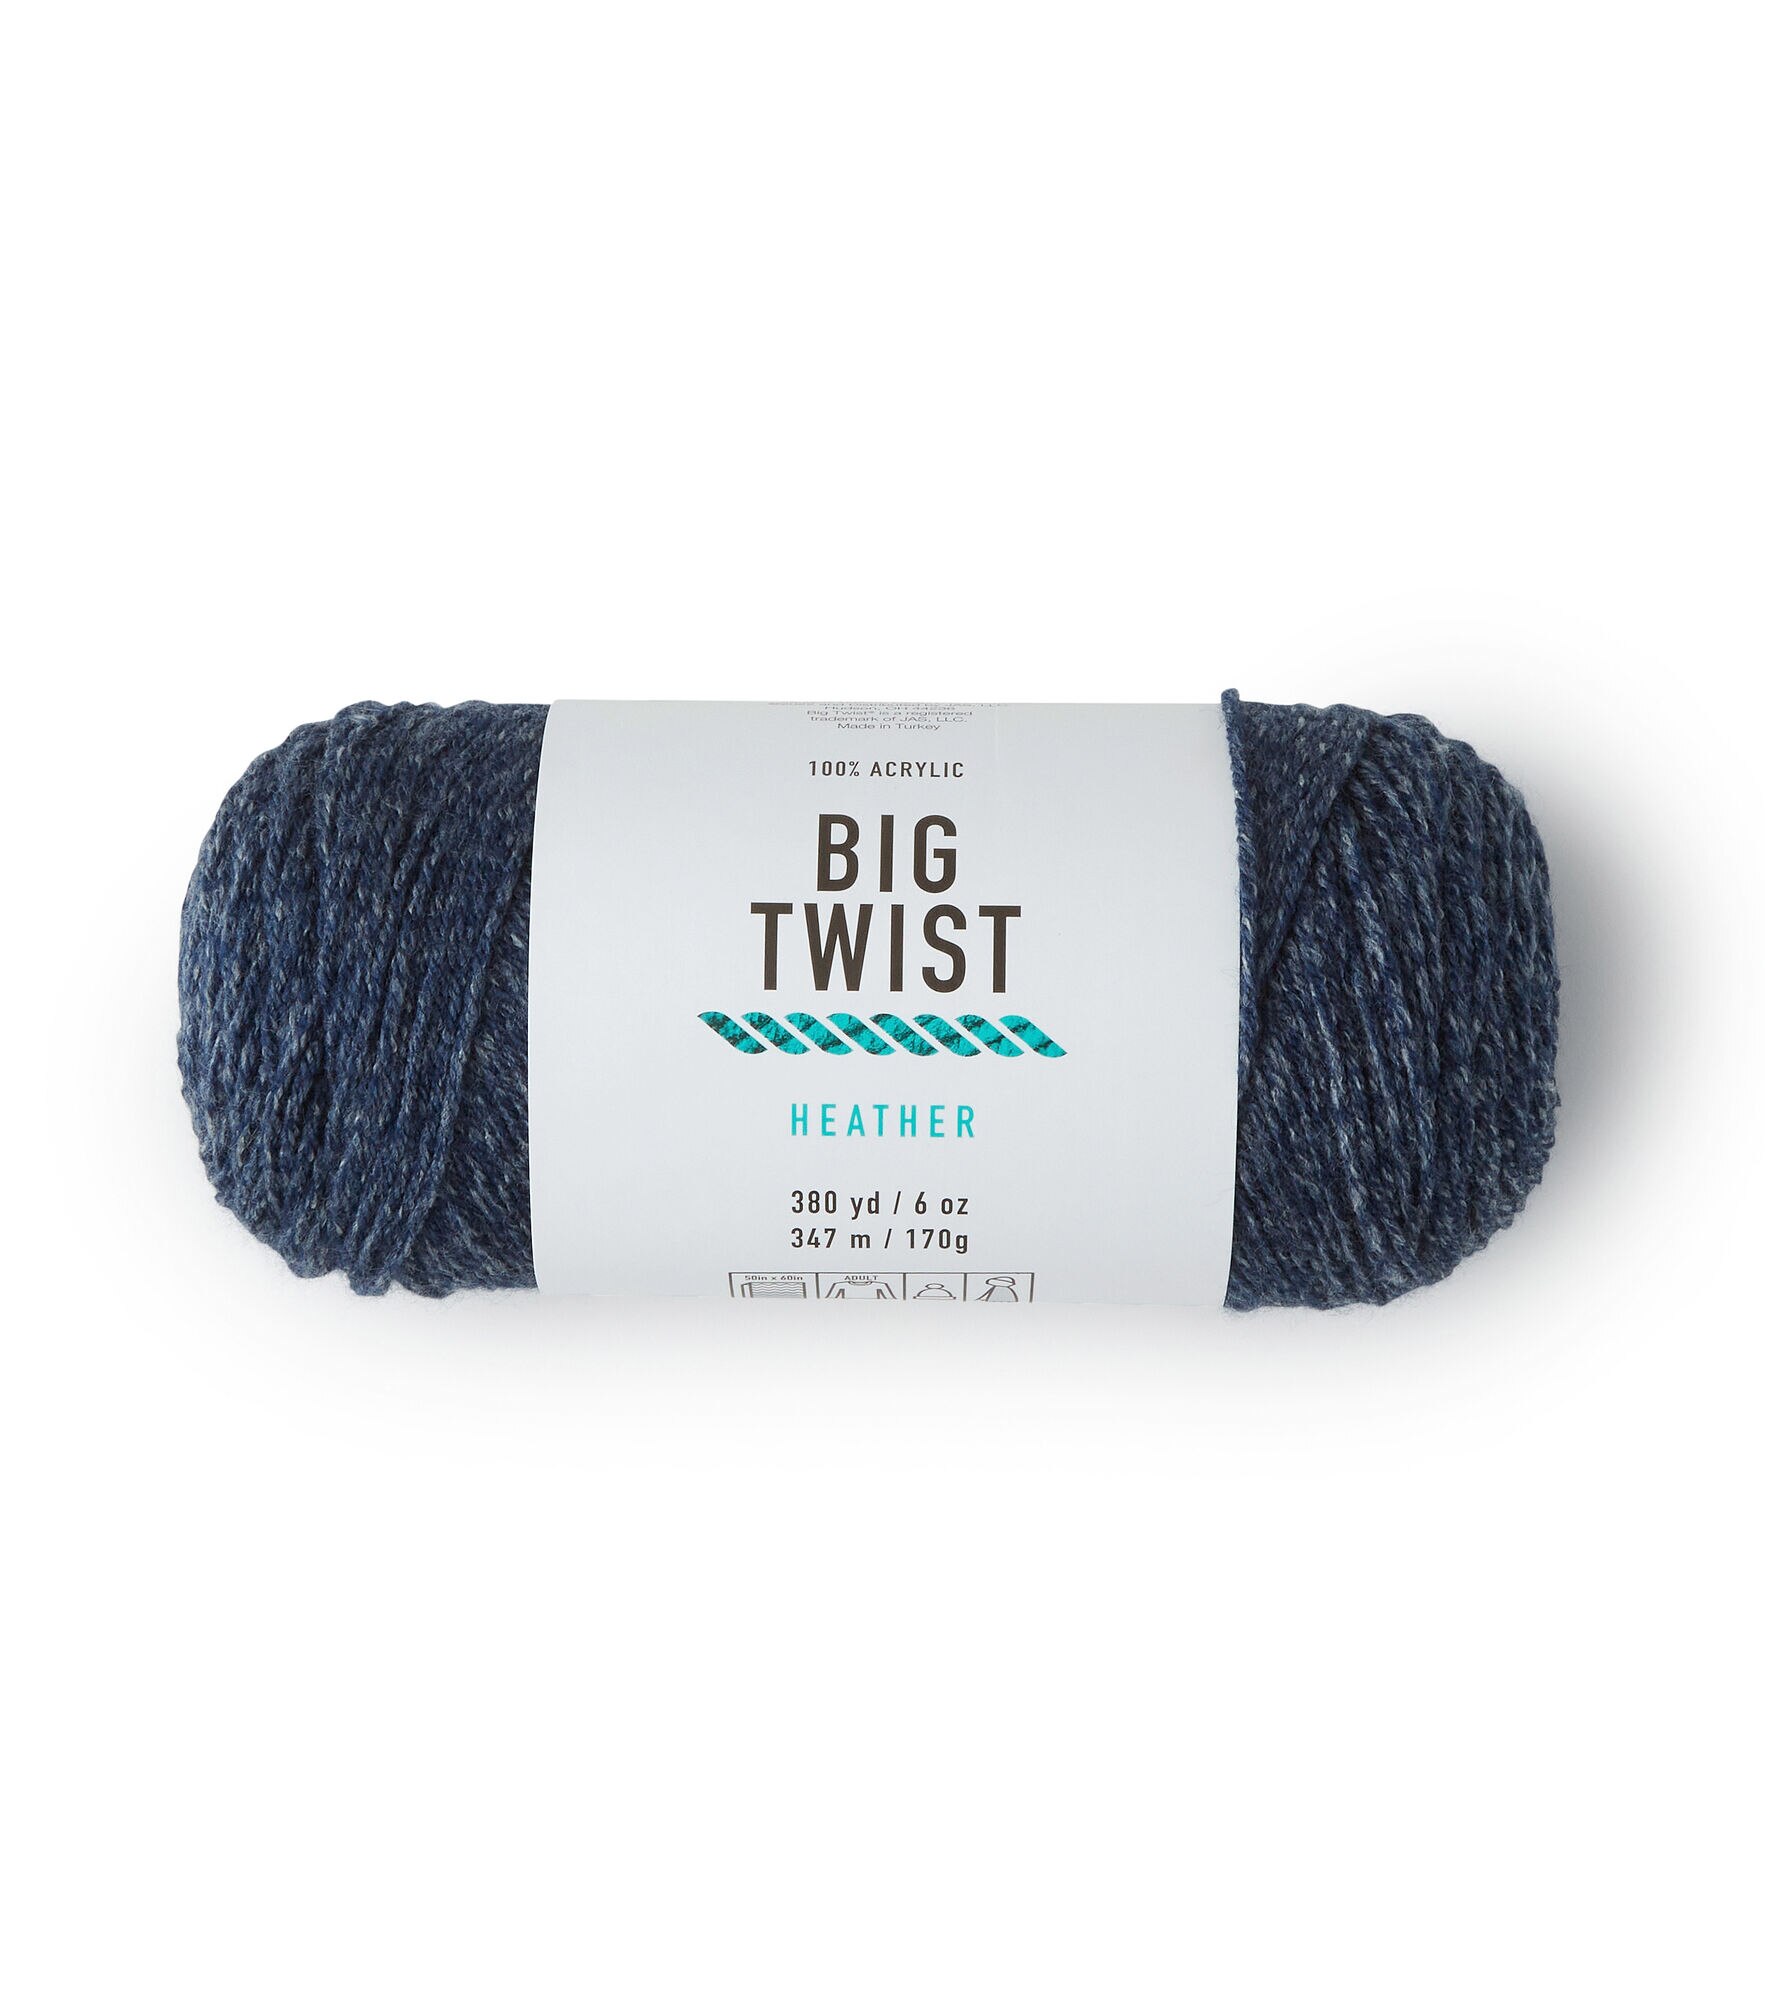 Has anyone noticed that JoAnn's Big Twist yarn has gone down in quality? :  r/craftsnark